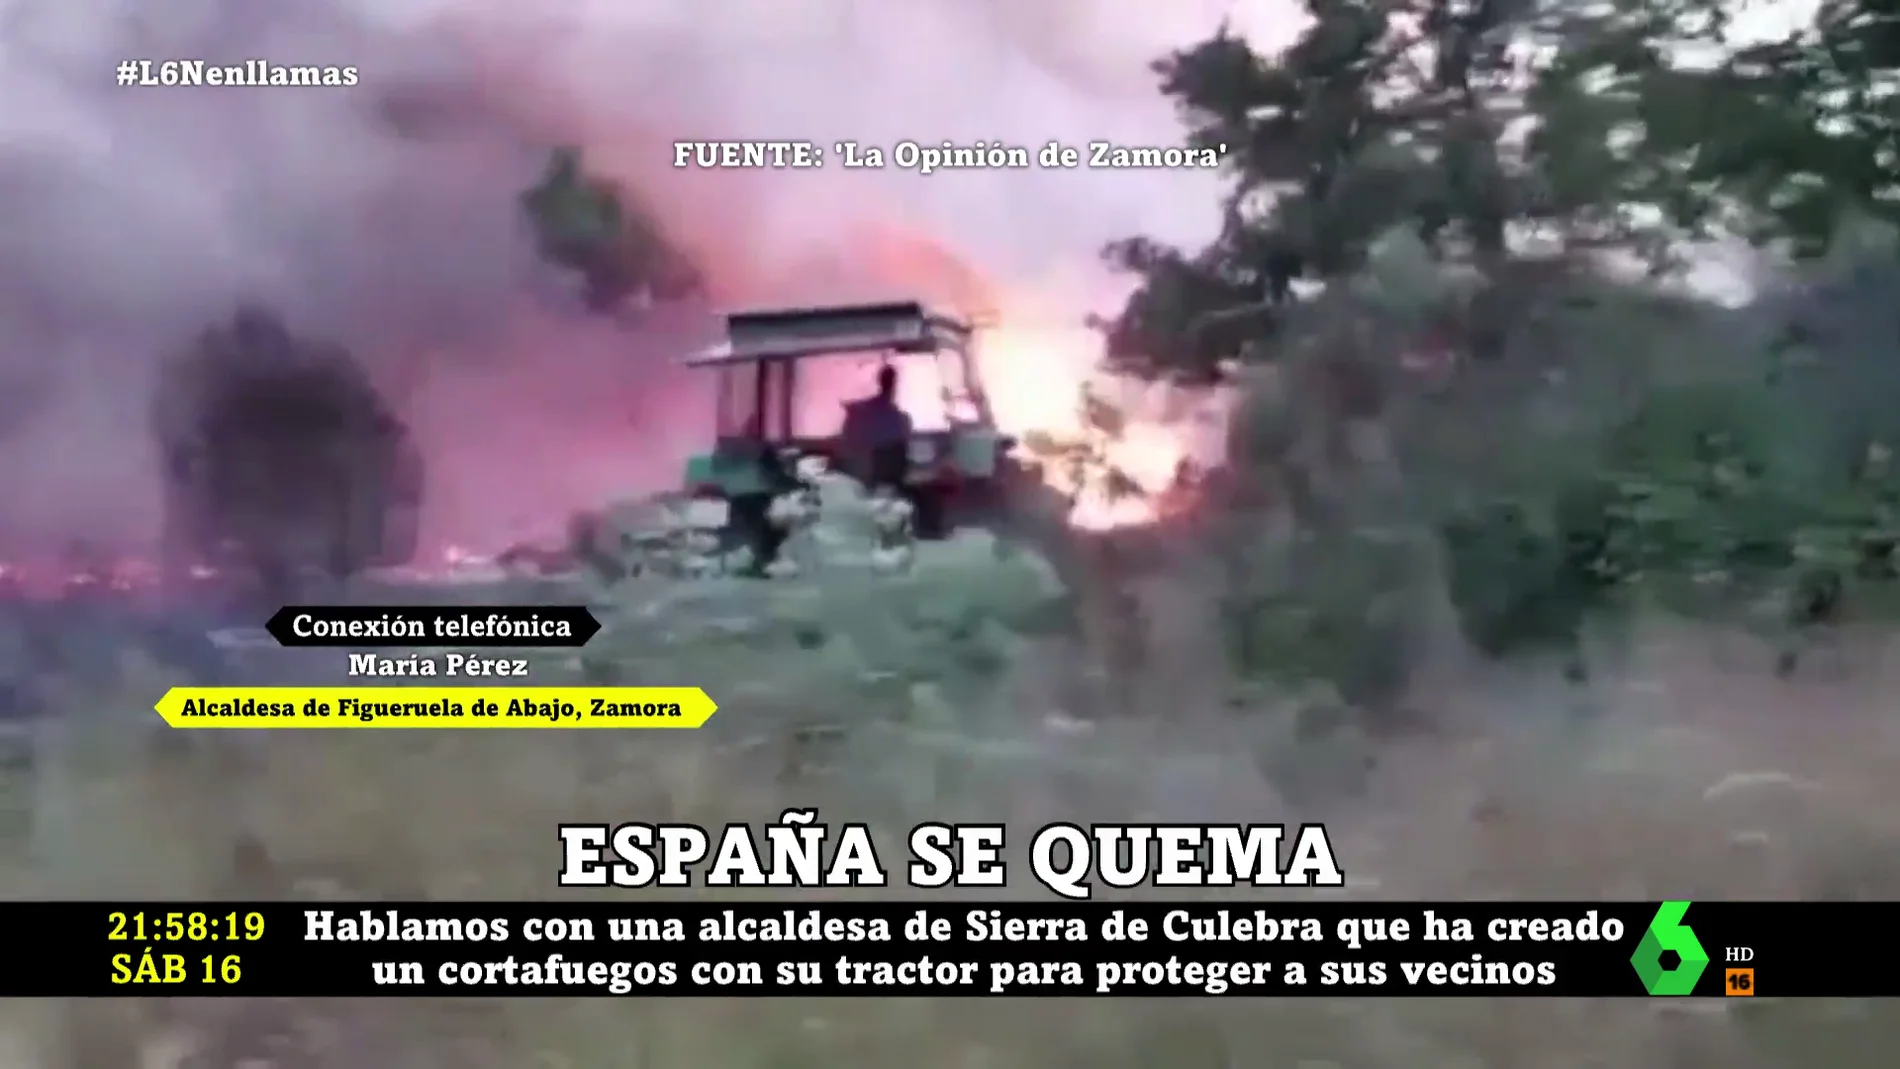 La alcaldesa de Zamora que sacó su tractor para hacer frente al incendio de la Sierra de la Culebra: "Somos de pueblo, no tenemos miedo"